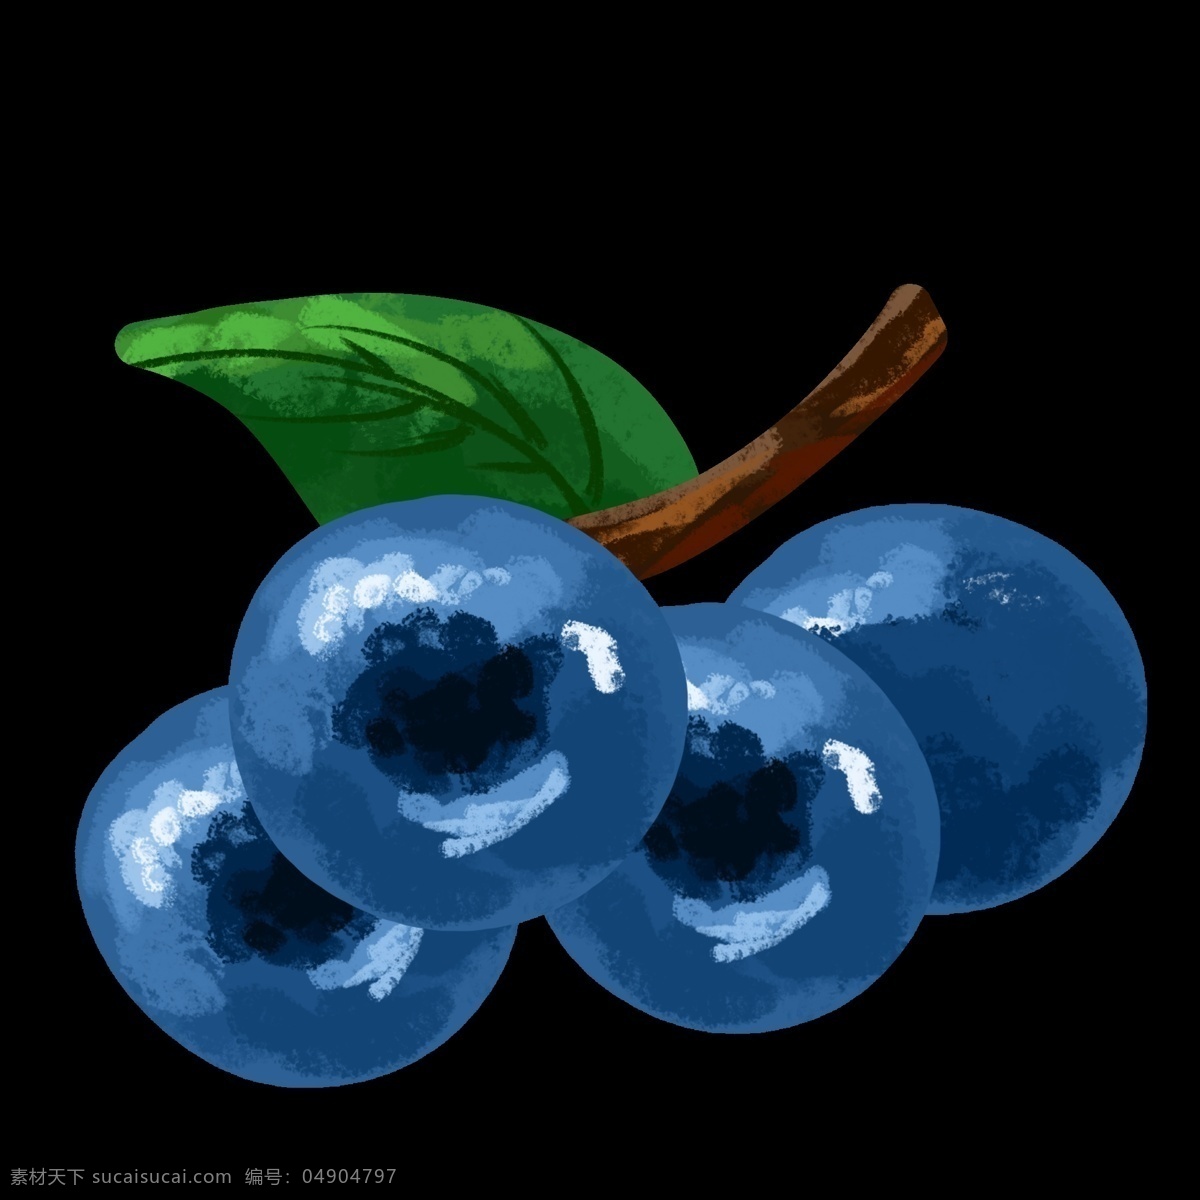 油画 风格 两 只 蓝莓 水果 一个 大蓝莓 独立枝头 紫色 漂亮 文件 两个 香甜 酸酸的 装饰 贴画 免扣